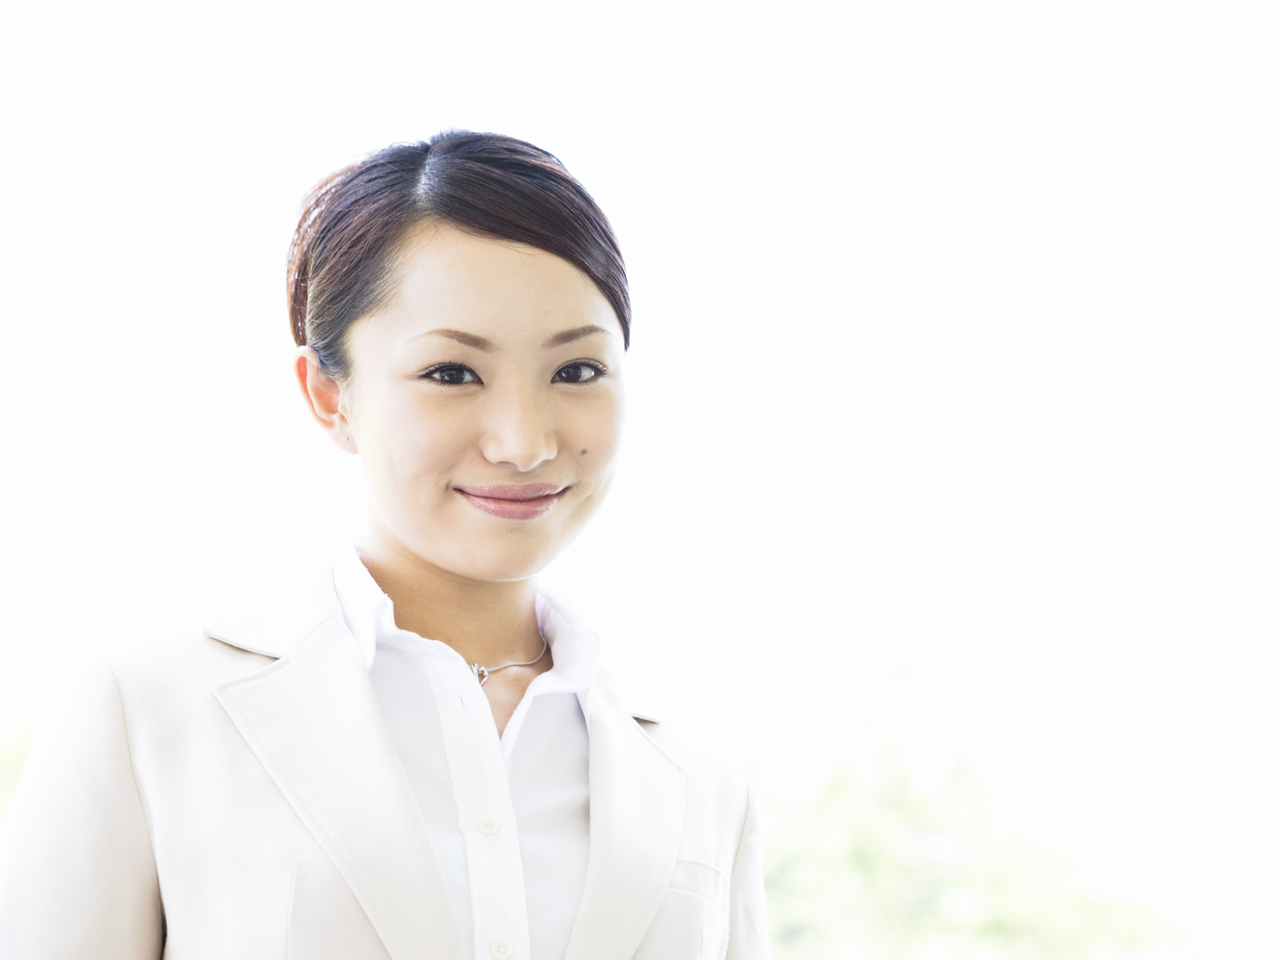 日本政策金融公庫の創業融資を代行サポートする女性の写真